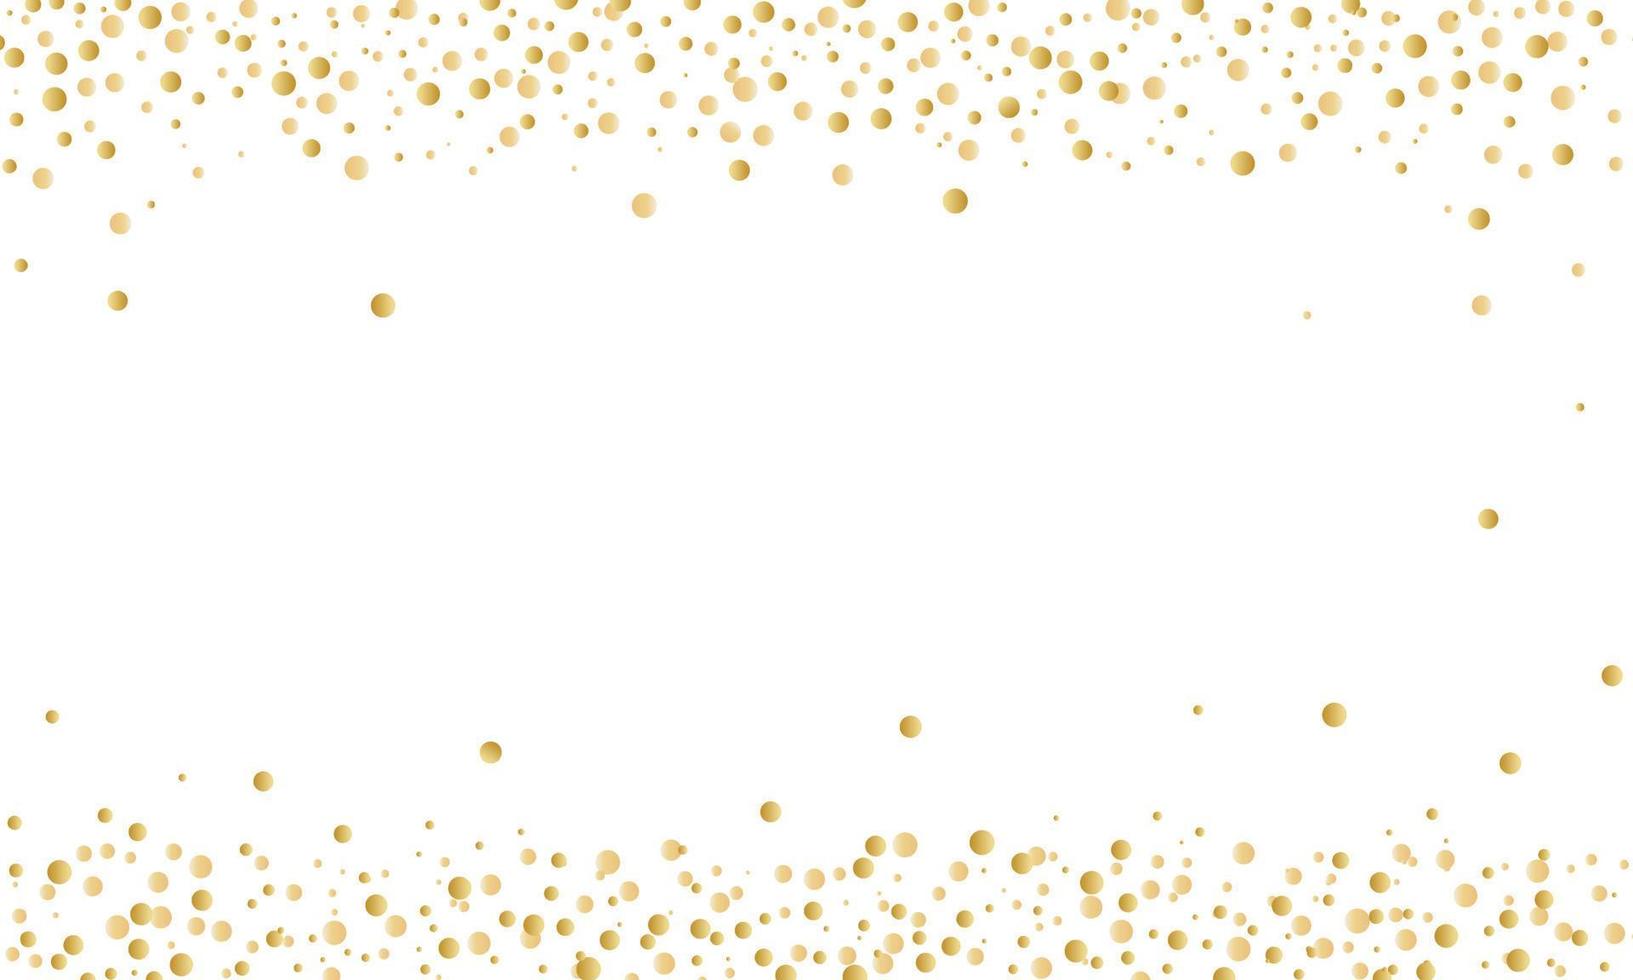 fundo de felicitações com confete ouro superior e inferior. ilustração vetorial vetor